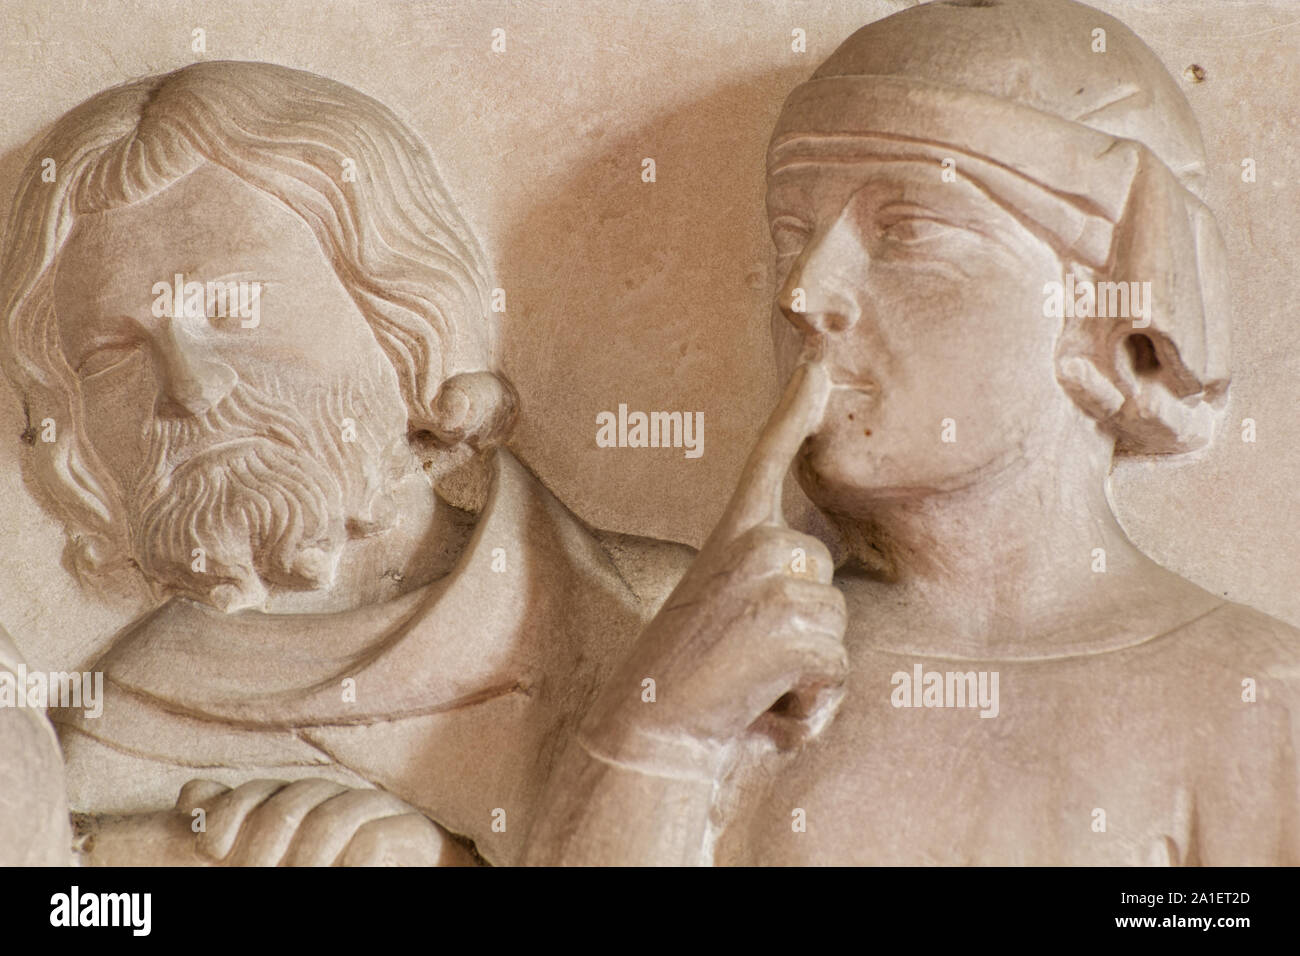 L'apprentissage actif (un chercheur avec un doigt sur ses lèvres l'écoute avec attention et réflexion) - Détail de la Cino da Pistoia's Tomb - Duomo - Pistoia Banque D'Images